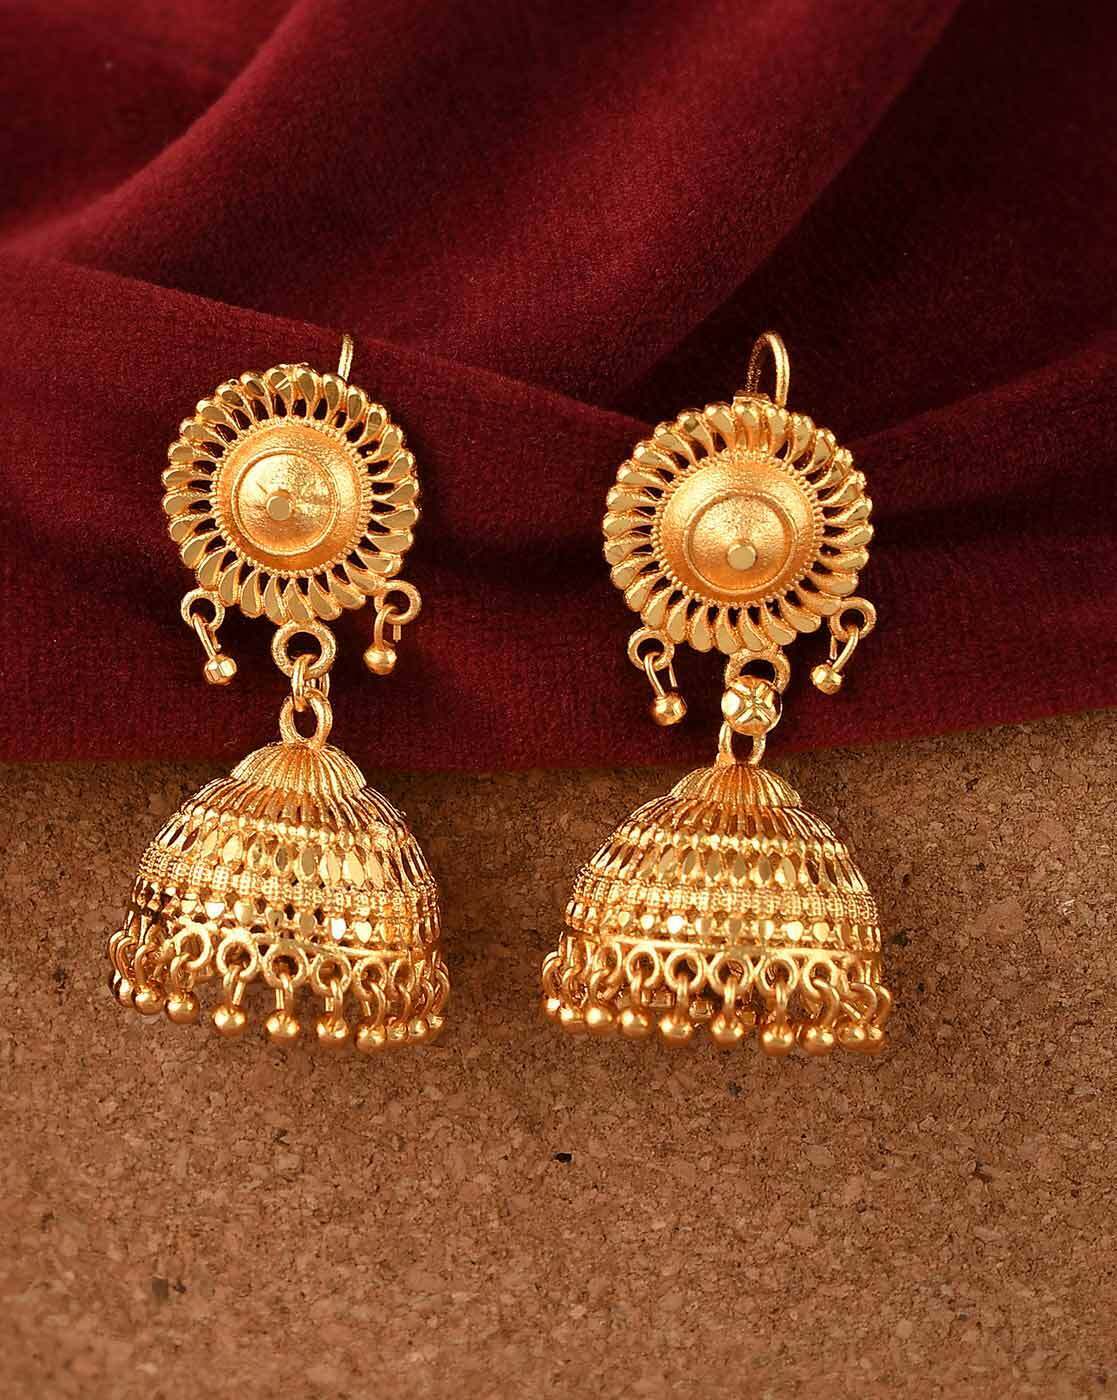 22k Gold Earrings Jhumki Jhumka Indian Wedding Women Jewelry, K1823 - Etsy